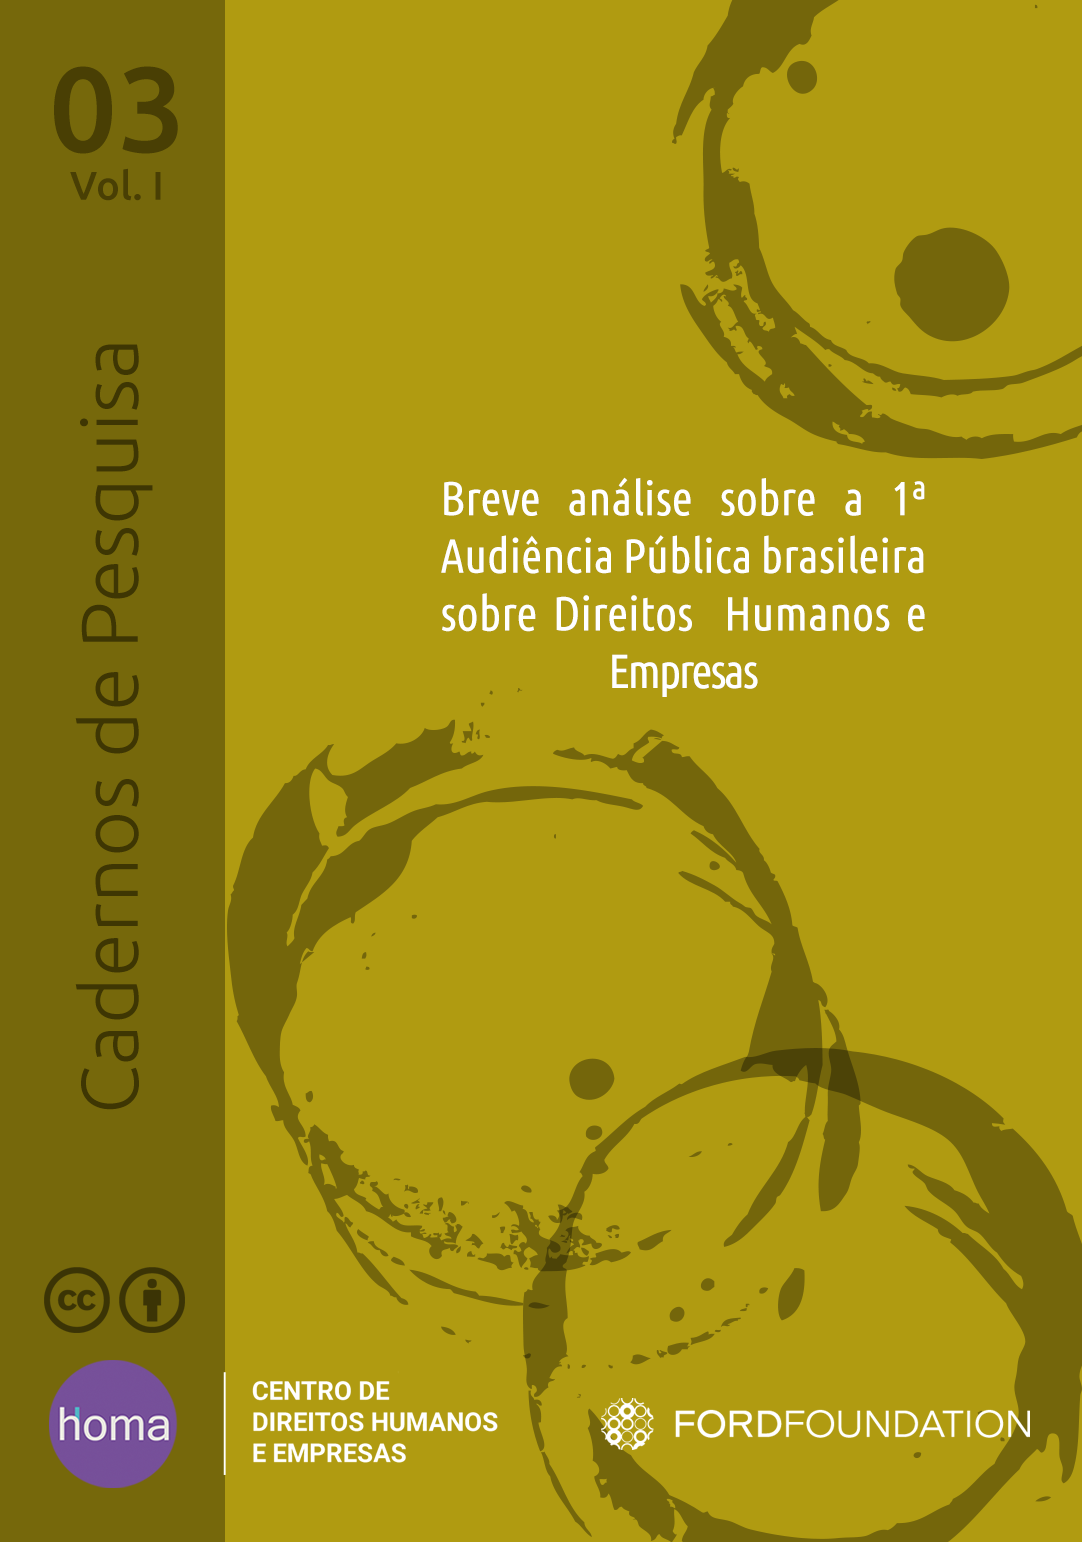 Breve análise sobre a 1ª Audiência Pública brasileira sobre Direitos Humanos e Empresas